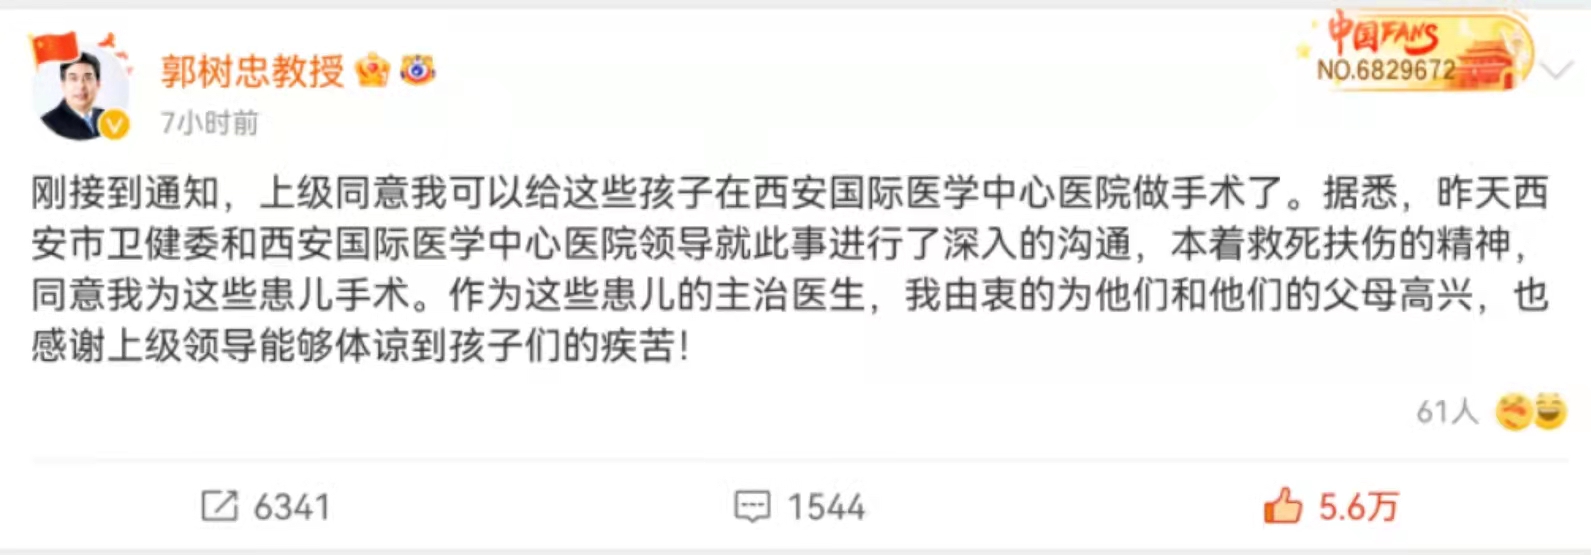 郭树忠称，他将继续在任职医院为患者进行手术。来源: 微博截图